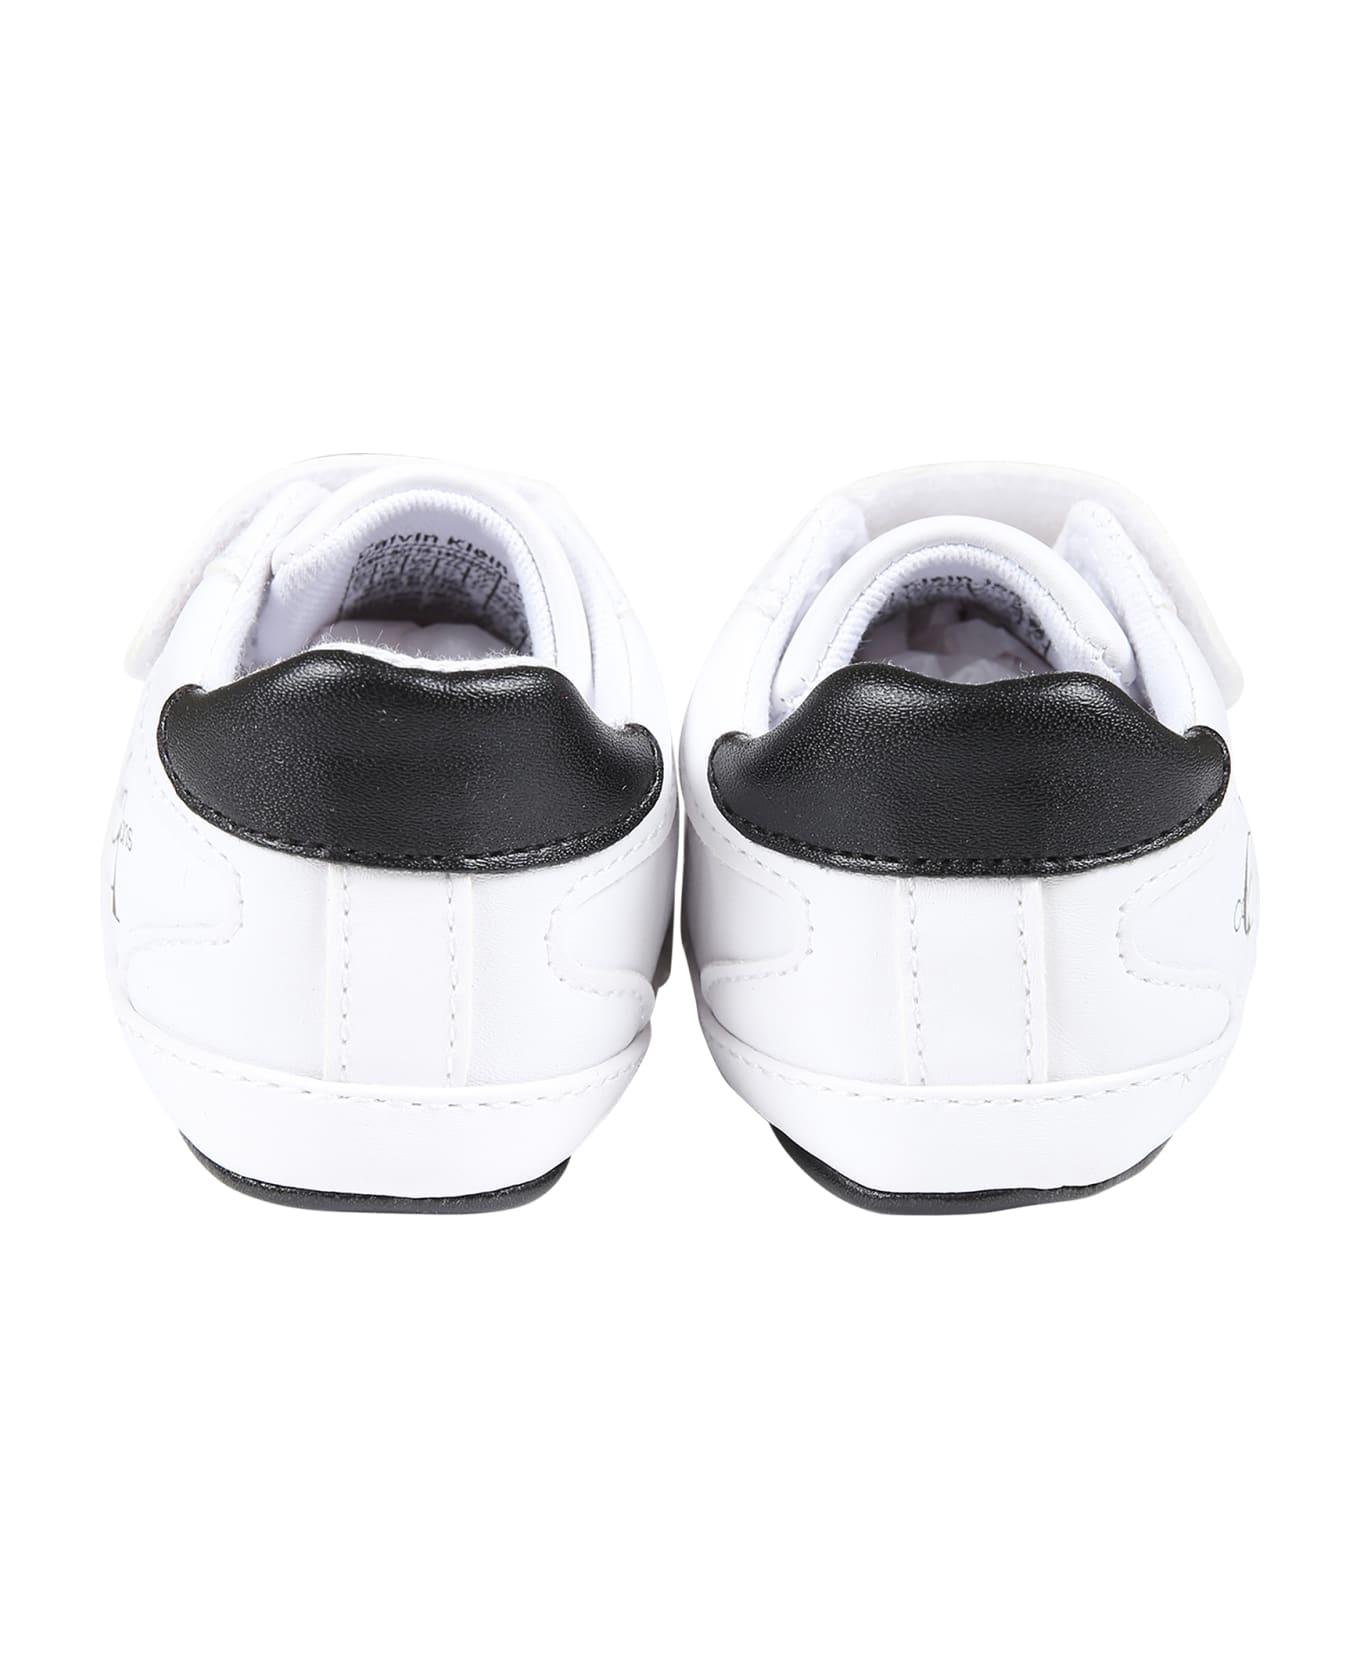 Calvin Klein White Sneakers For Baby Boy With Logo - White シューズ